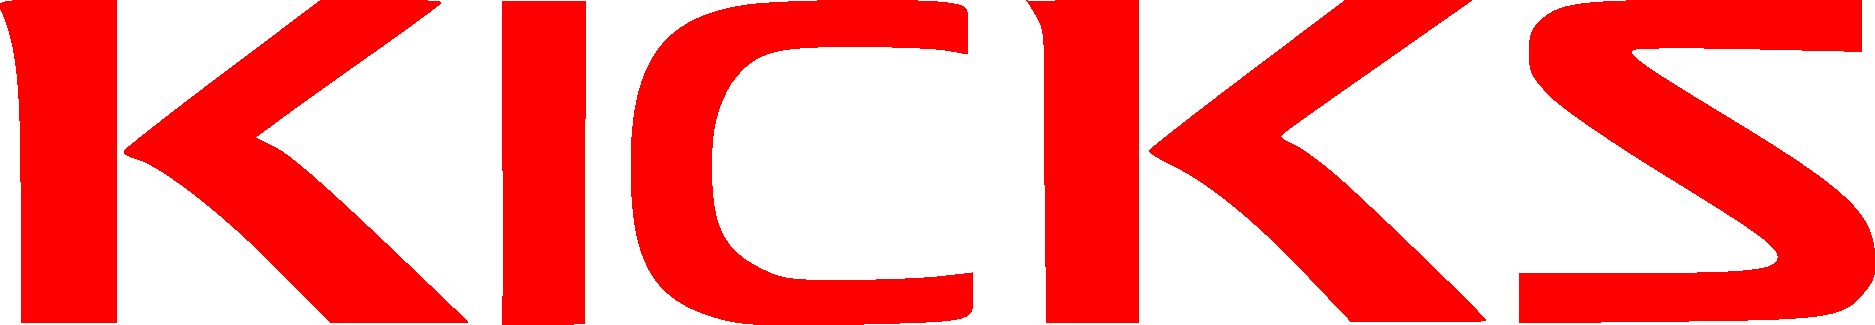 Nissan Kicks Logo Vector - (.Ai .PNG .SVG .EPS Free Download)